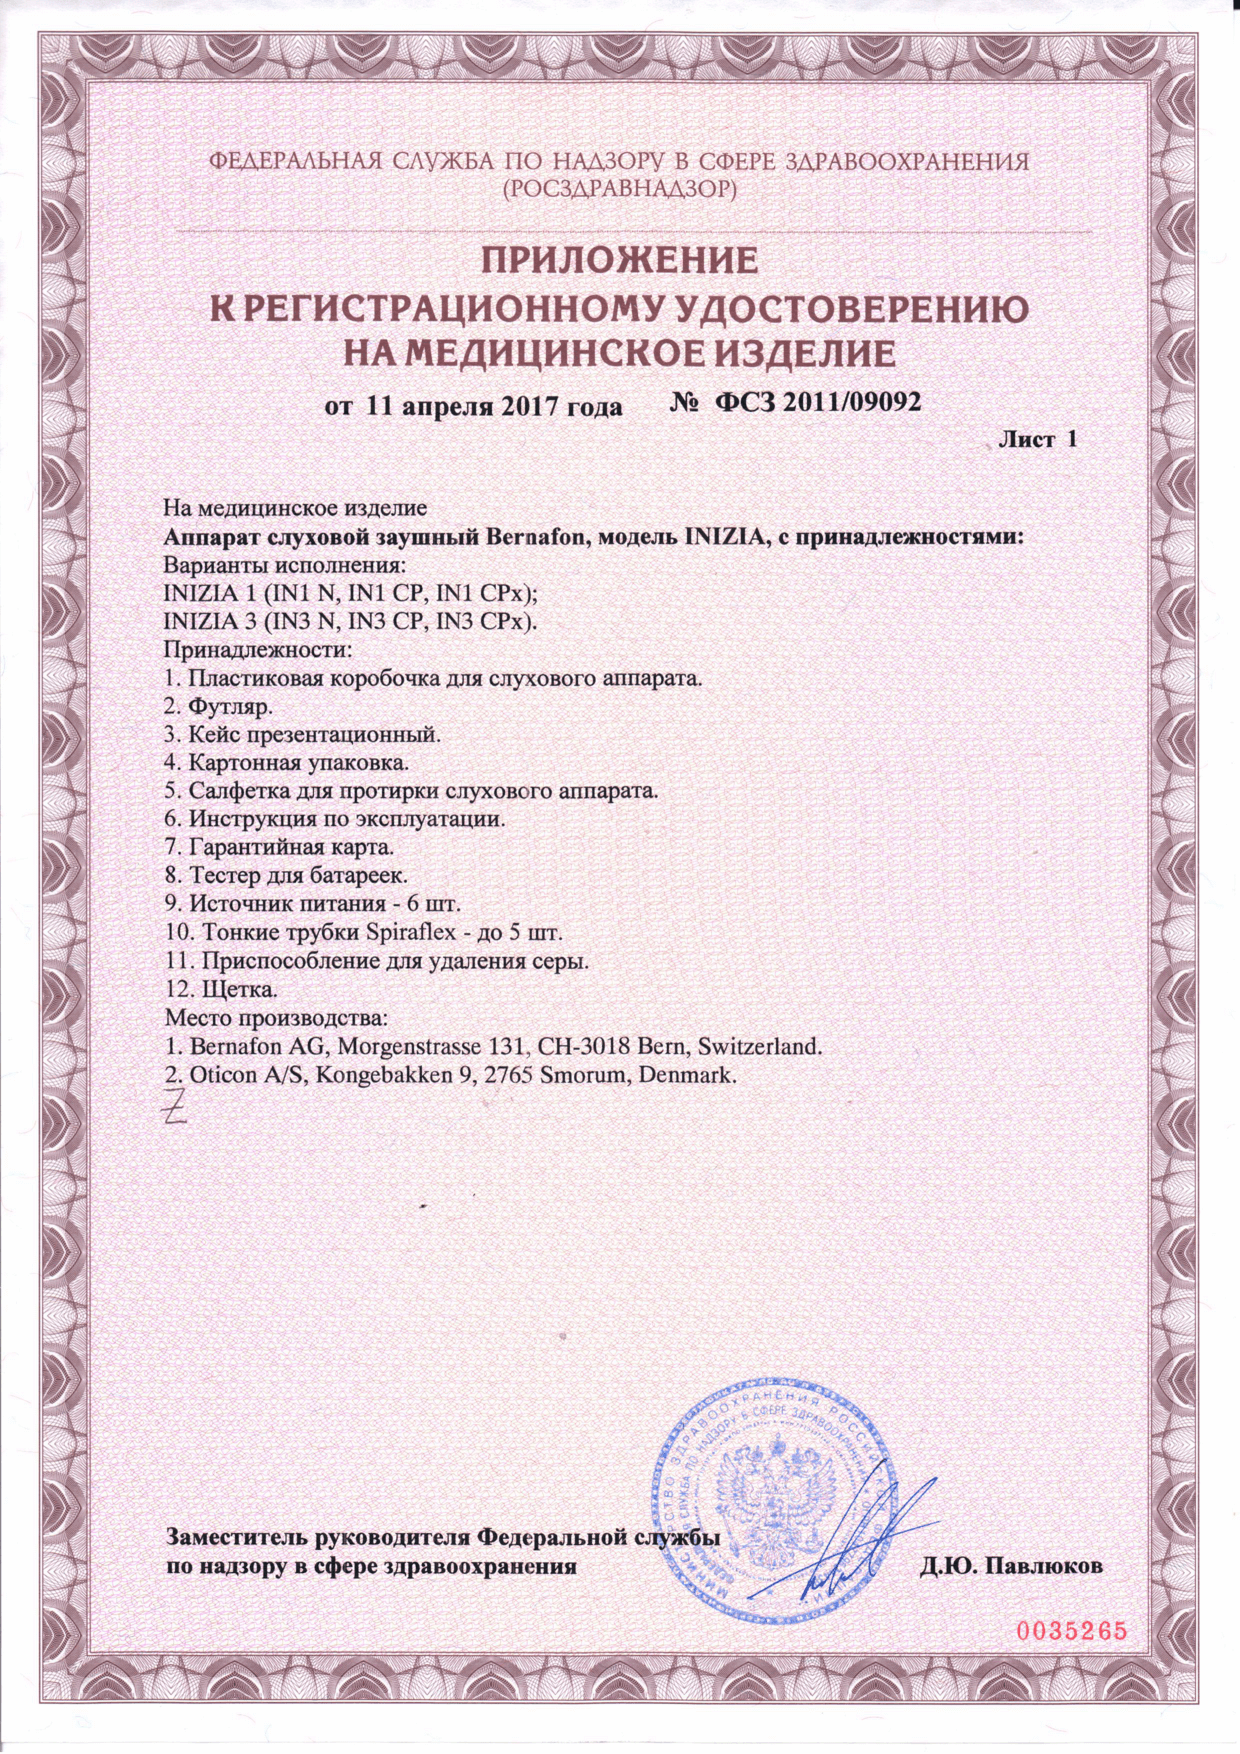 Регистрационное удостоверение на медицинское изделие - Аппарат слуховой заушный Bernafon, модель INIZIA - 2 страница